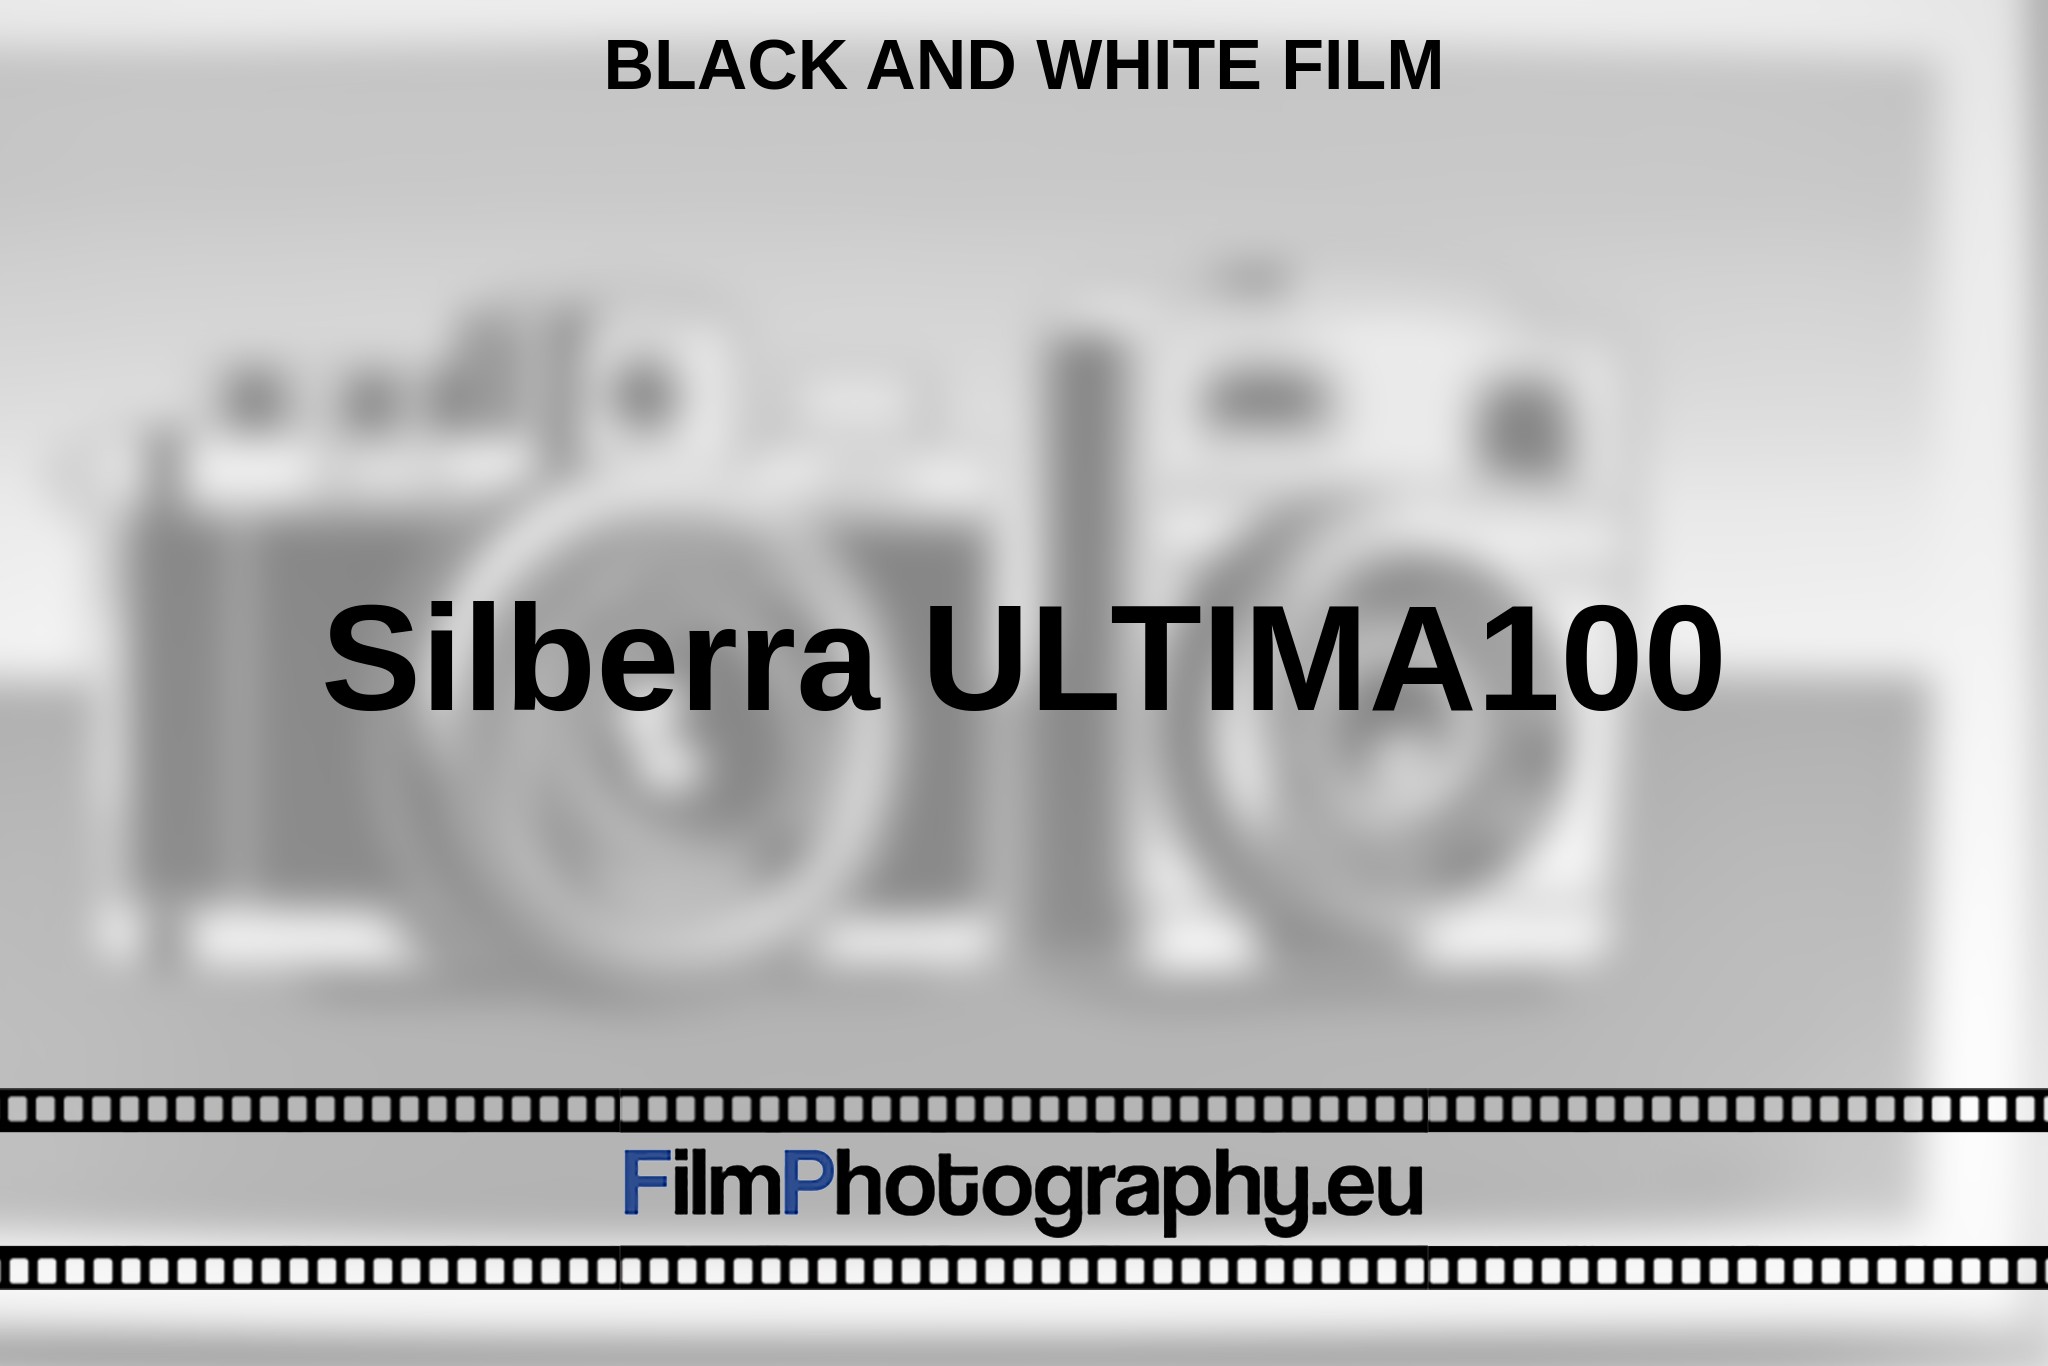 silberra-ultima100-black-and-white-film-en-bnv.jpg